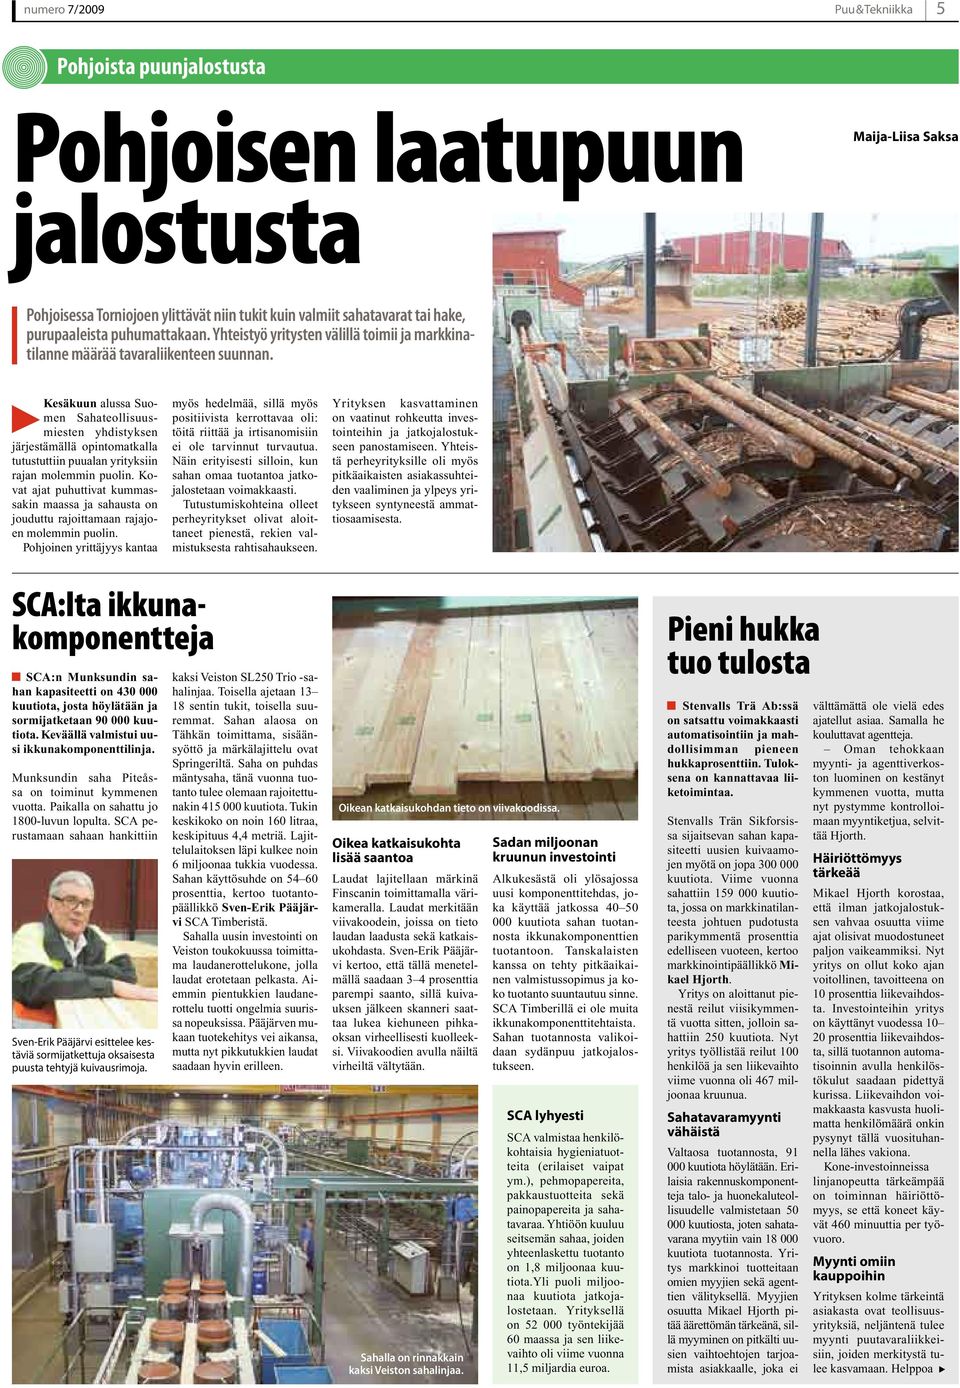 Kesäkuun alussa Suomen Sahateollisuusmiesten yhdistyksen järjestämällä opintomatkalla tutustuttiin puualan yrityksiin rajan molemmin puolin.